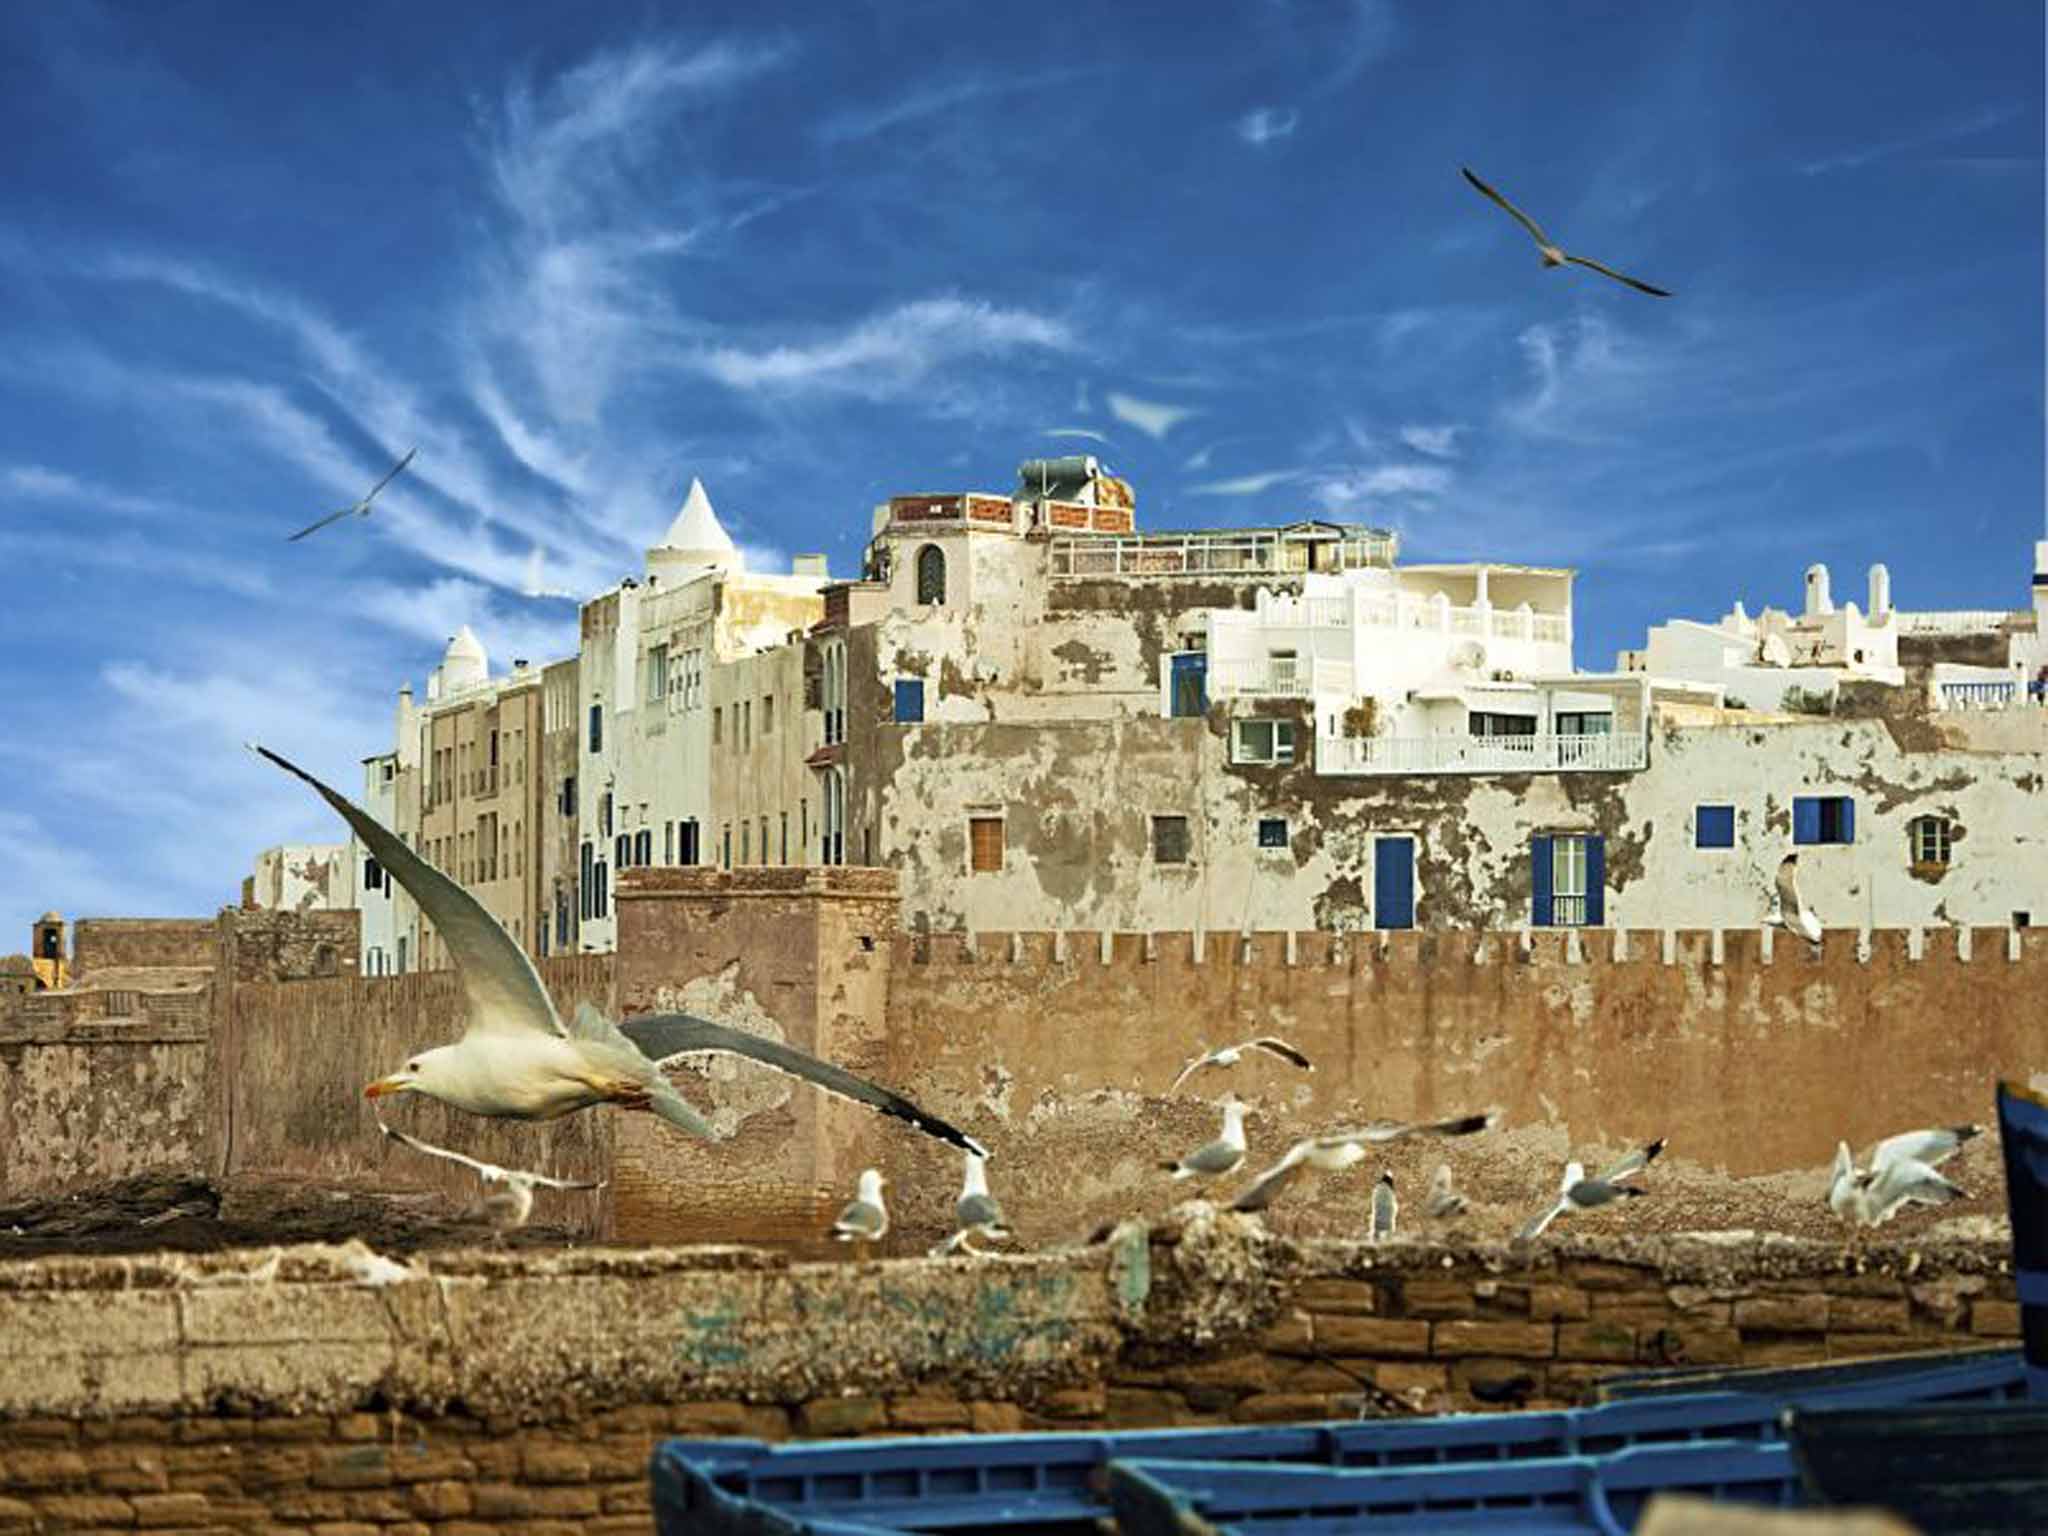 Essaouira has a laid-back vibe